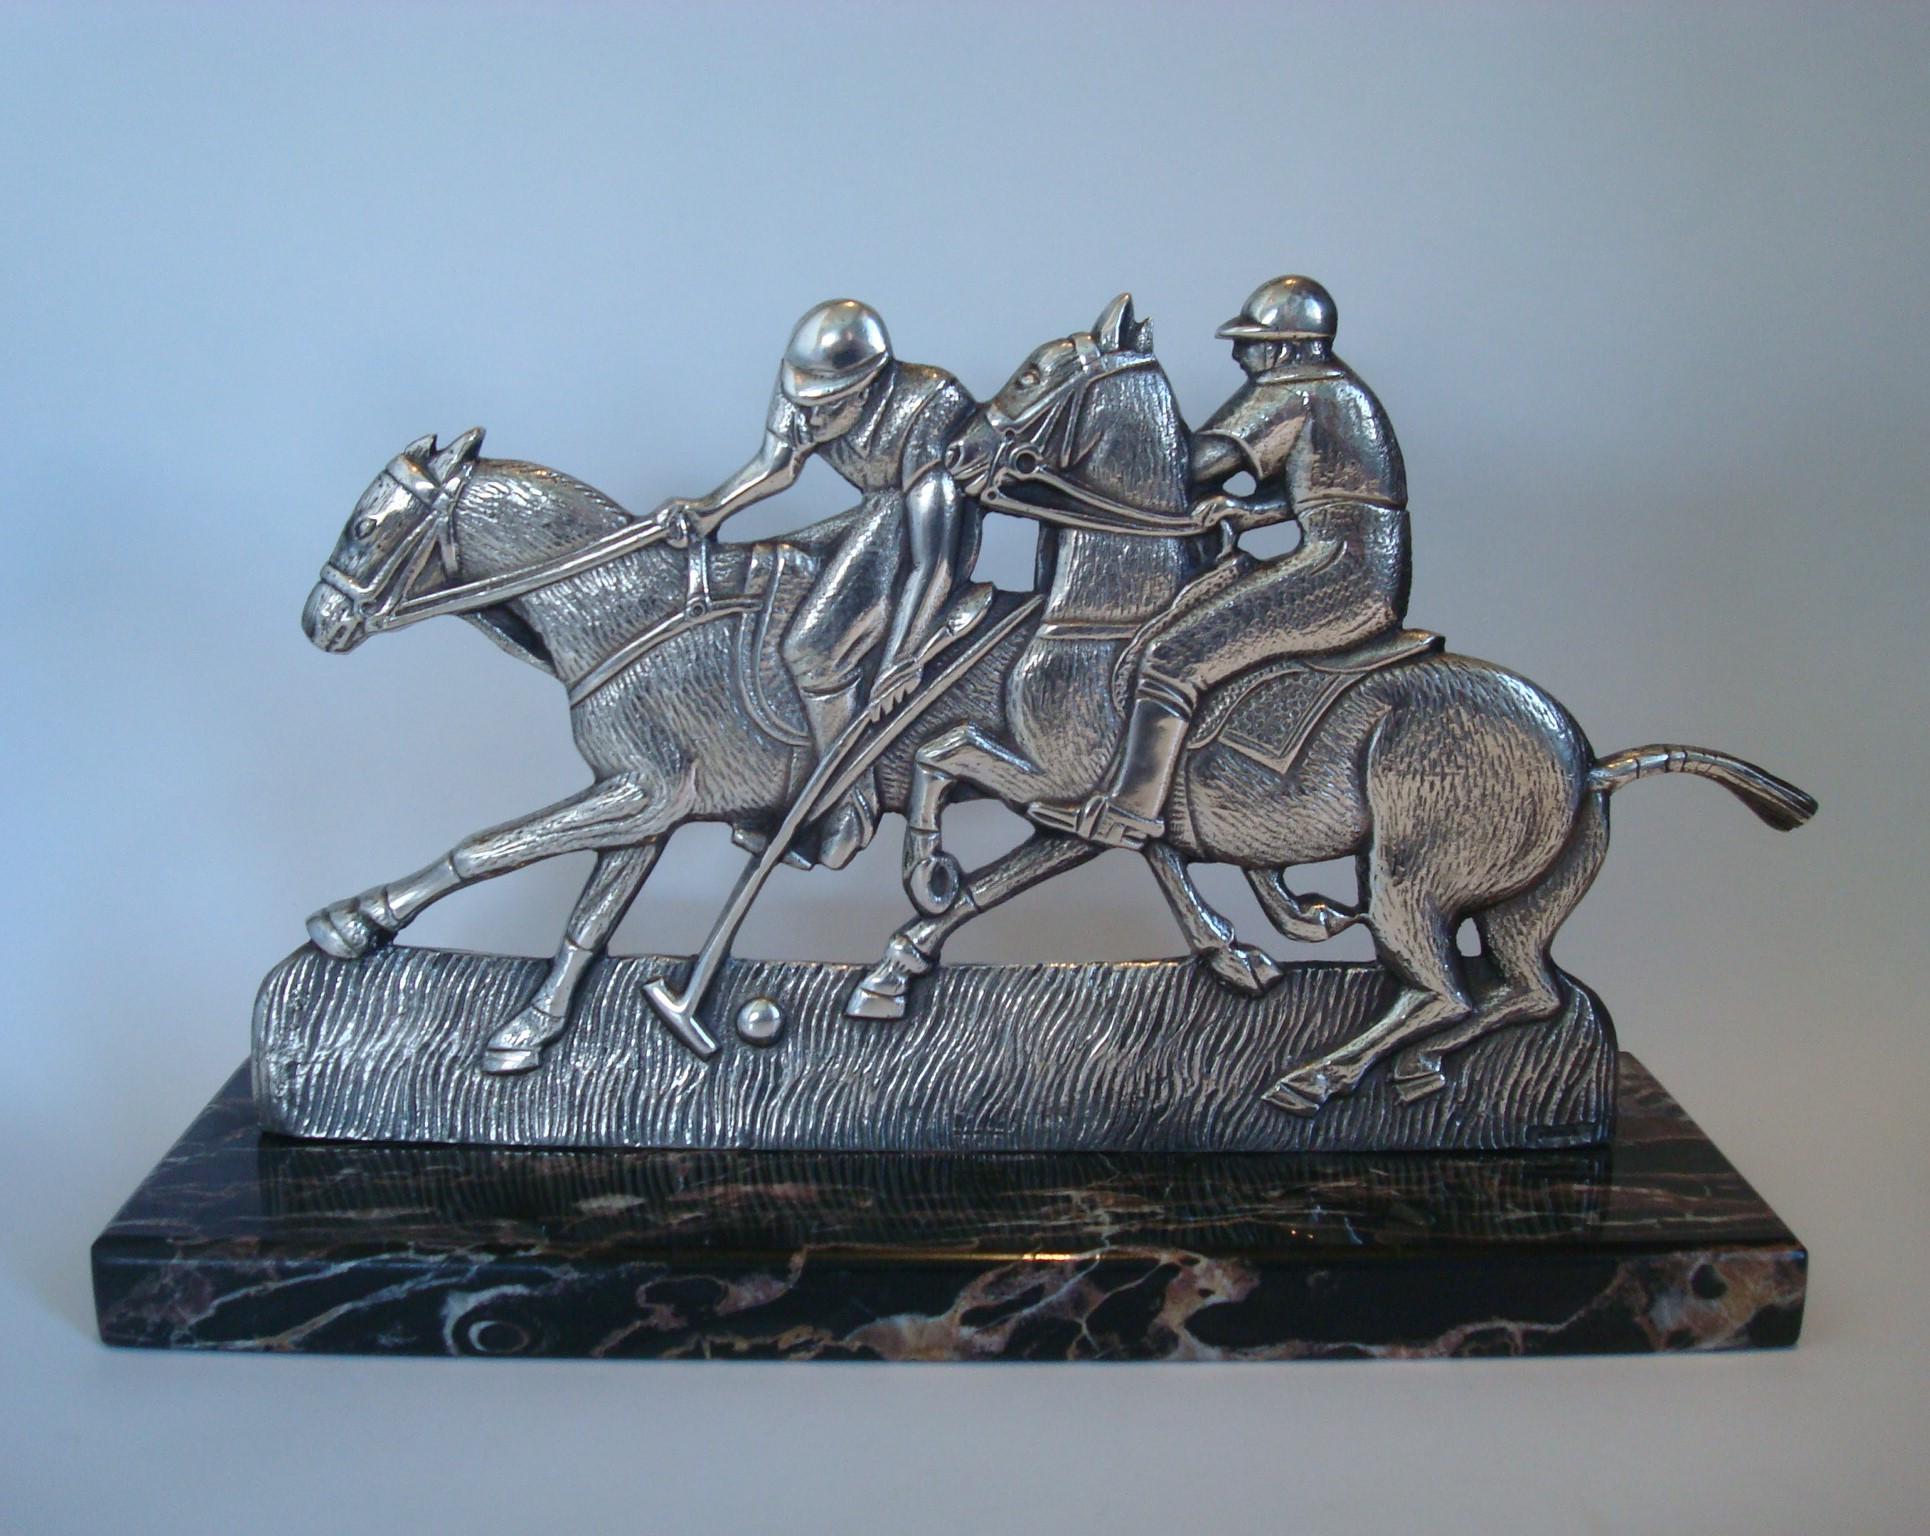 Sculpture en bronze Art déco des années 1920 représentant un match de polo.
Scène de deux joueurs de polo sur leurs chevaux. Réalisé en bronze argenté et monté sur un socle en marbre italien Portoro.
Marqué France et 27.
 